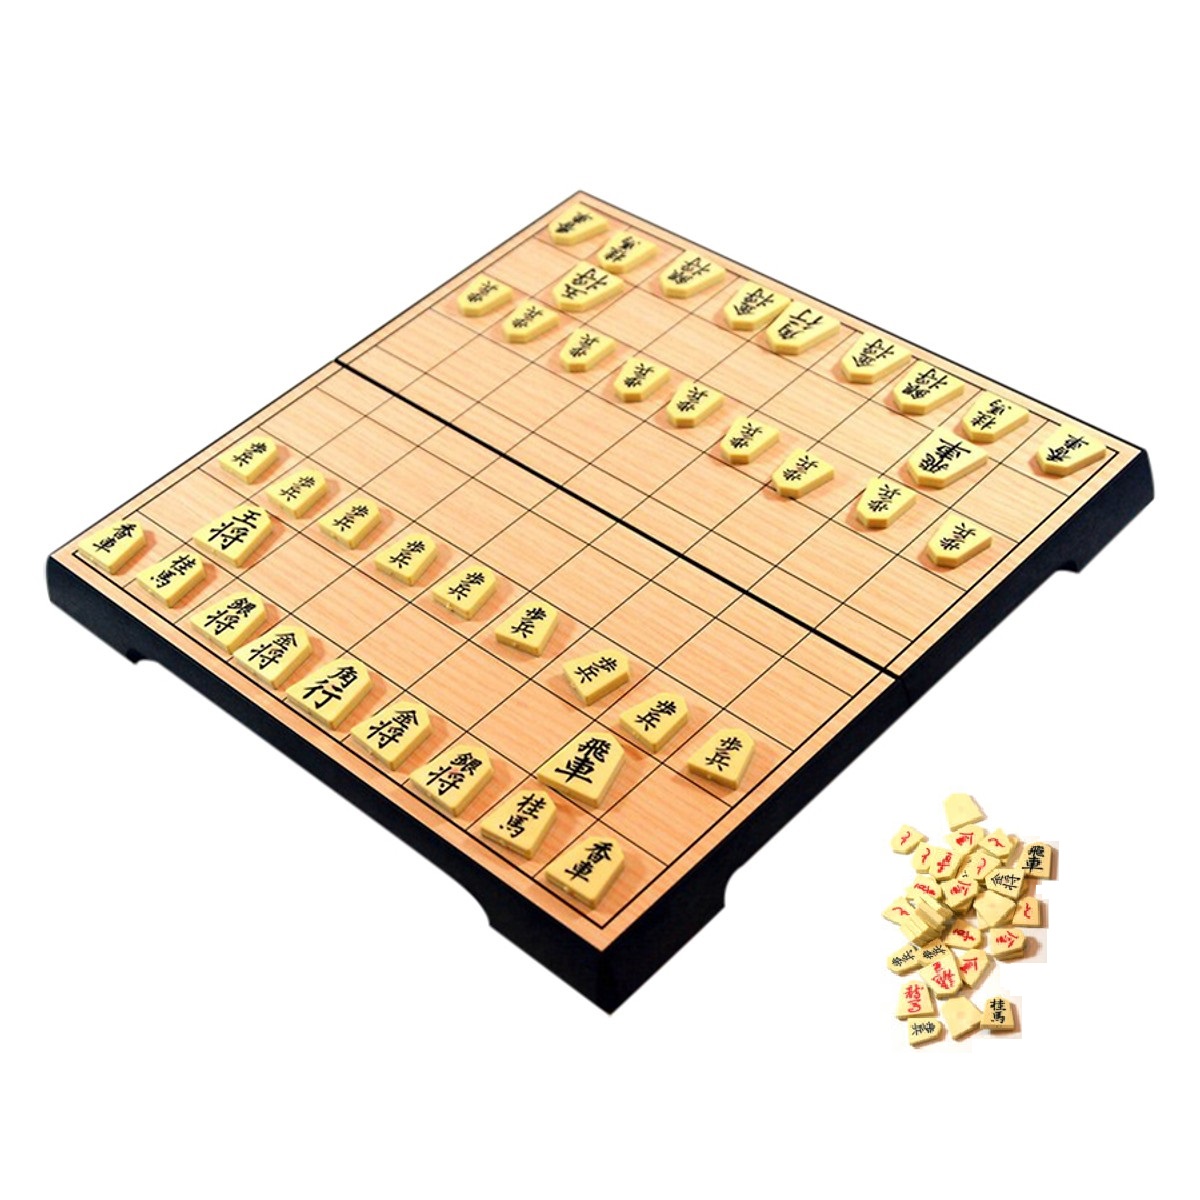 Mua cờ shogi Nhật Bản chất lượng - Với chất lượng tốt và thiết kế độc đáo, bộ cờ shogi Nhật Bản của chúng tôi là lựa chọn tuyệt vời cho những người yêu thích trò chơi. Được sản xuất từ những nguyên liệu tốt nhất, những chiếc cờ shogi của chúng tôi đảm bảo đáp ứng mọi nhu cầu và mong muốn của người chơi. Hãy đến với cửa hàng của chúng tôi để tận hưởng những trận đấu cờ thú vị cùng những chiếc cờ shogi chất lượng.